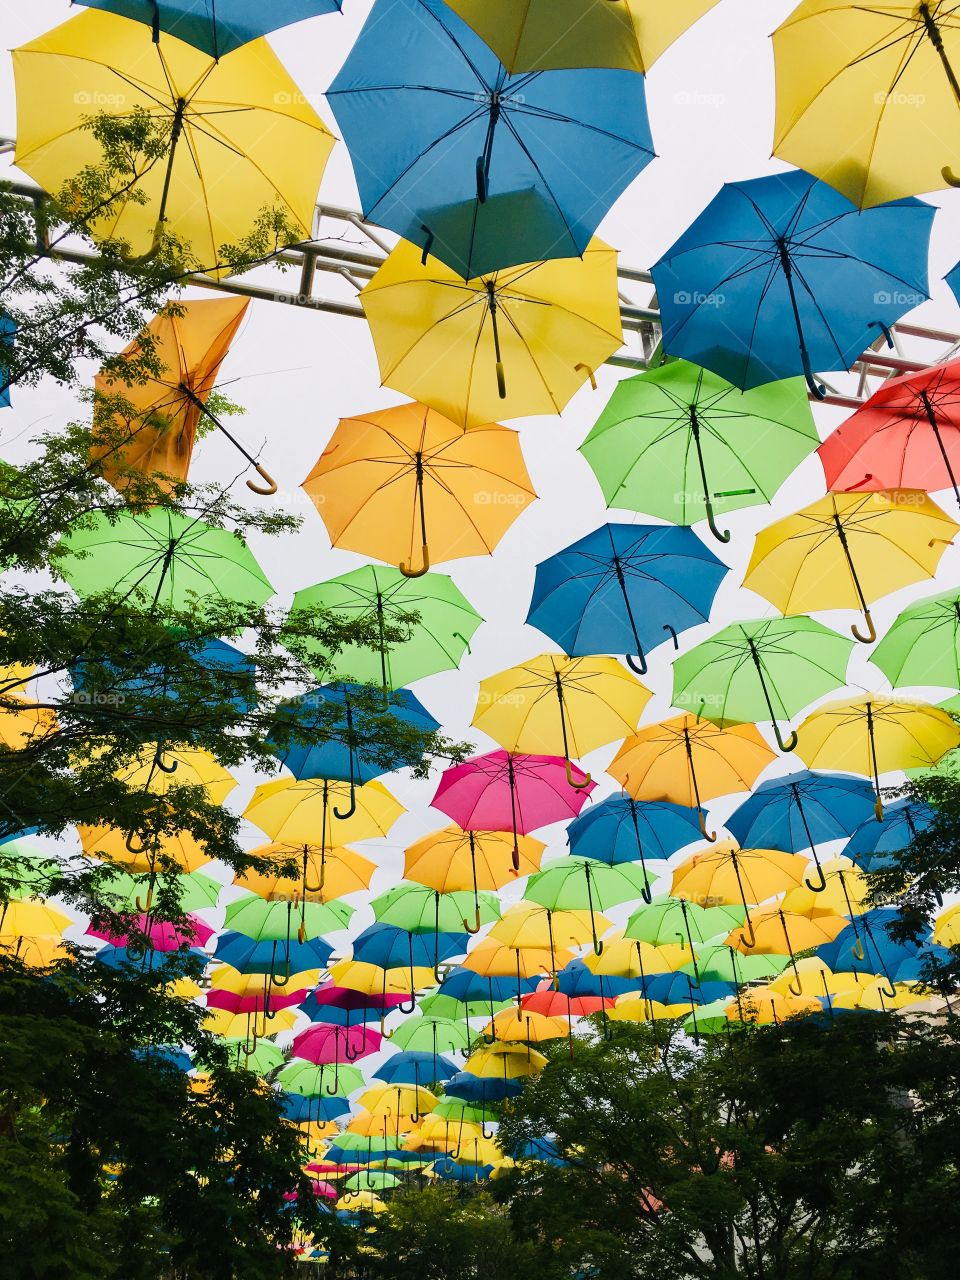 Umbrella Art Installation 